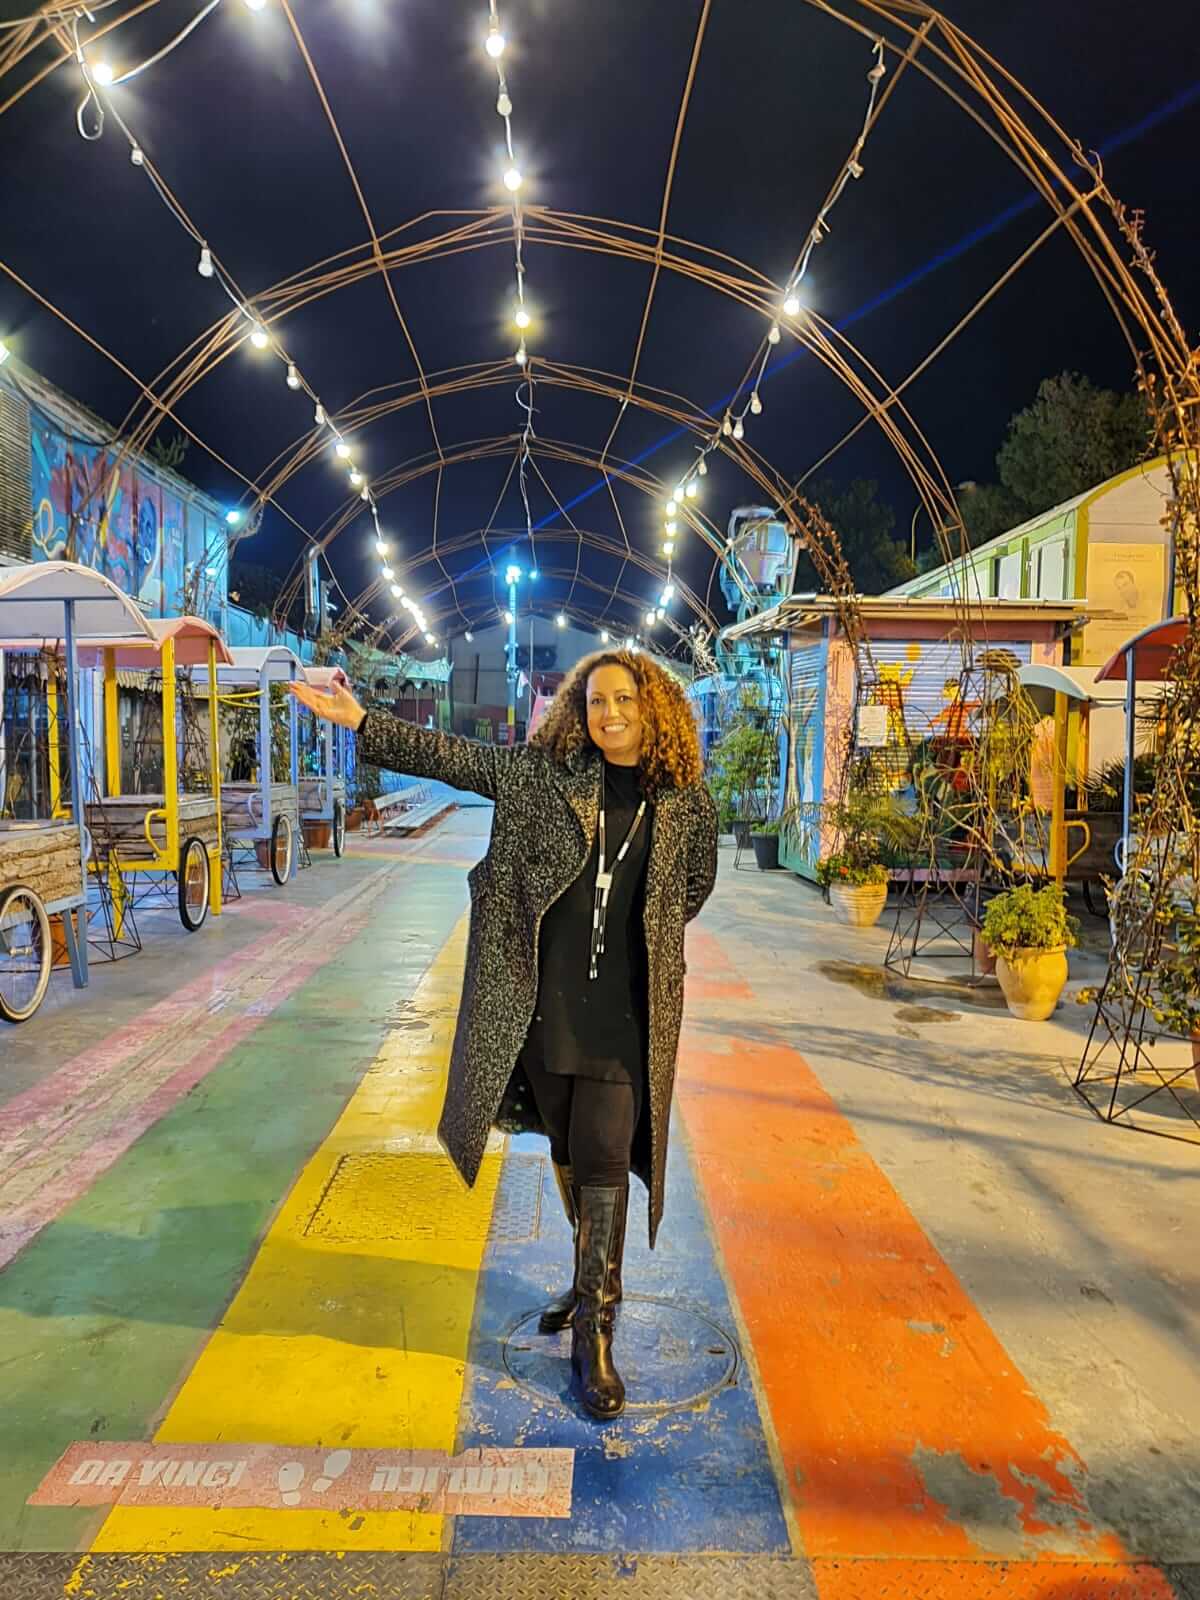 דנה סתוי בעלת הבלוג זמן איכות בפסטיבל ירושלים בעקבות האור